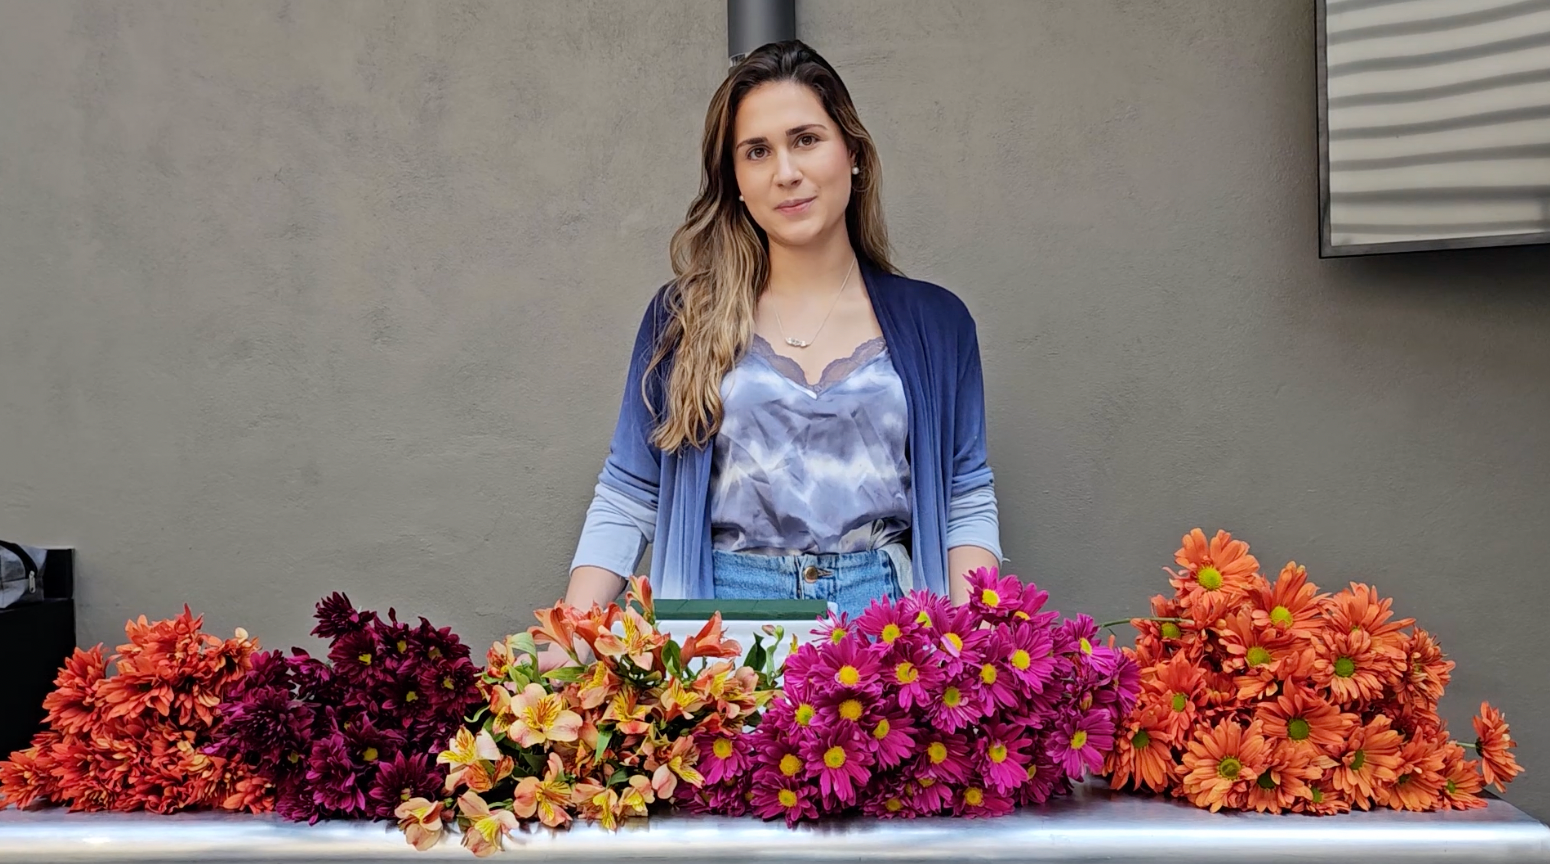 Hazlo tú mismo: Arreglos florales para el Día de Muertos